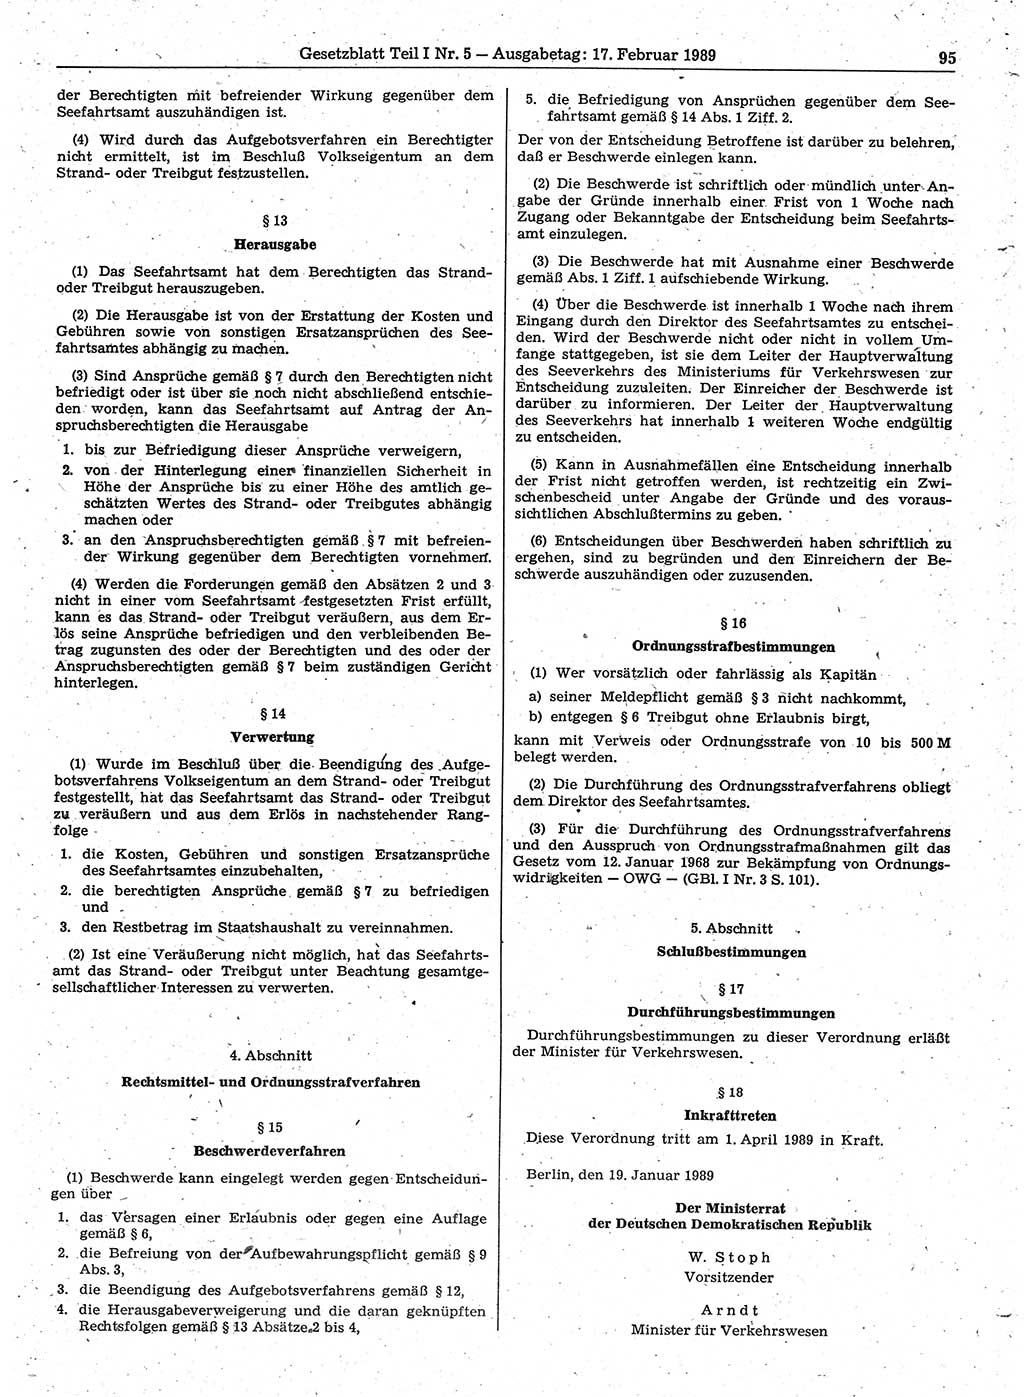 Gesetzblatt (GBl.) der Deutschen Demokratischen Republik (DDR) Teil Ⅰ 1989, Seite 95 (GBl. DDR Ⅰ 1989, S. 95)